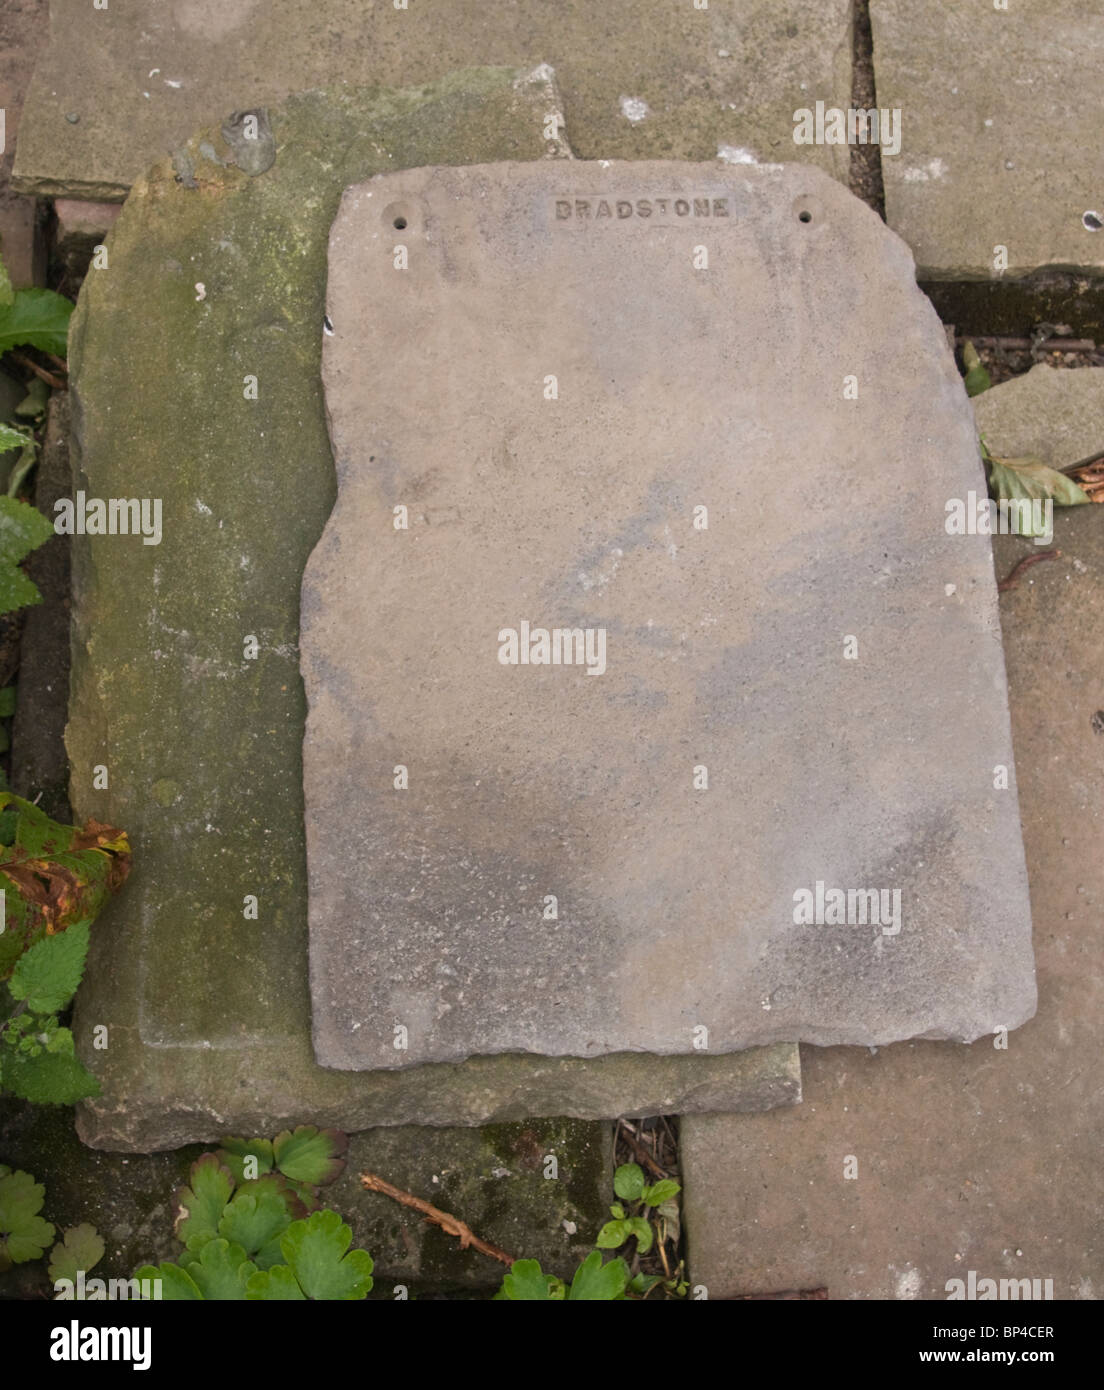 La pierre artificielle (Dalle de toiture fabriqué par Bradstone) assis sur une dalle du toit de la pierre naturelle. Banque D'Images